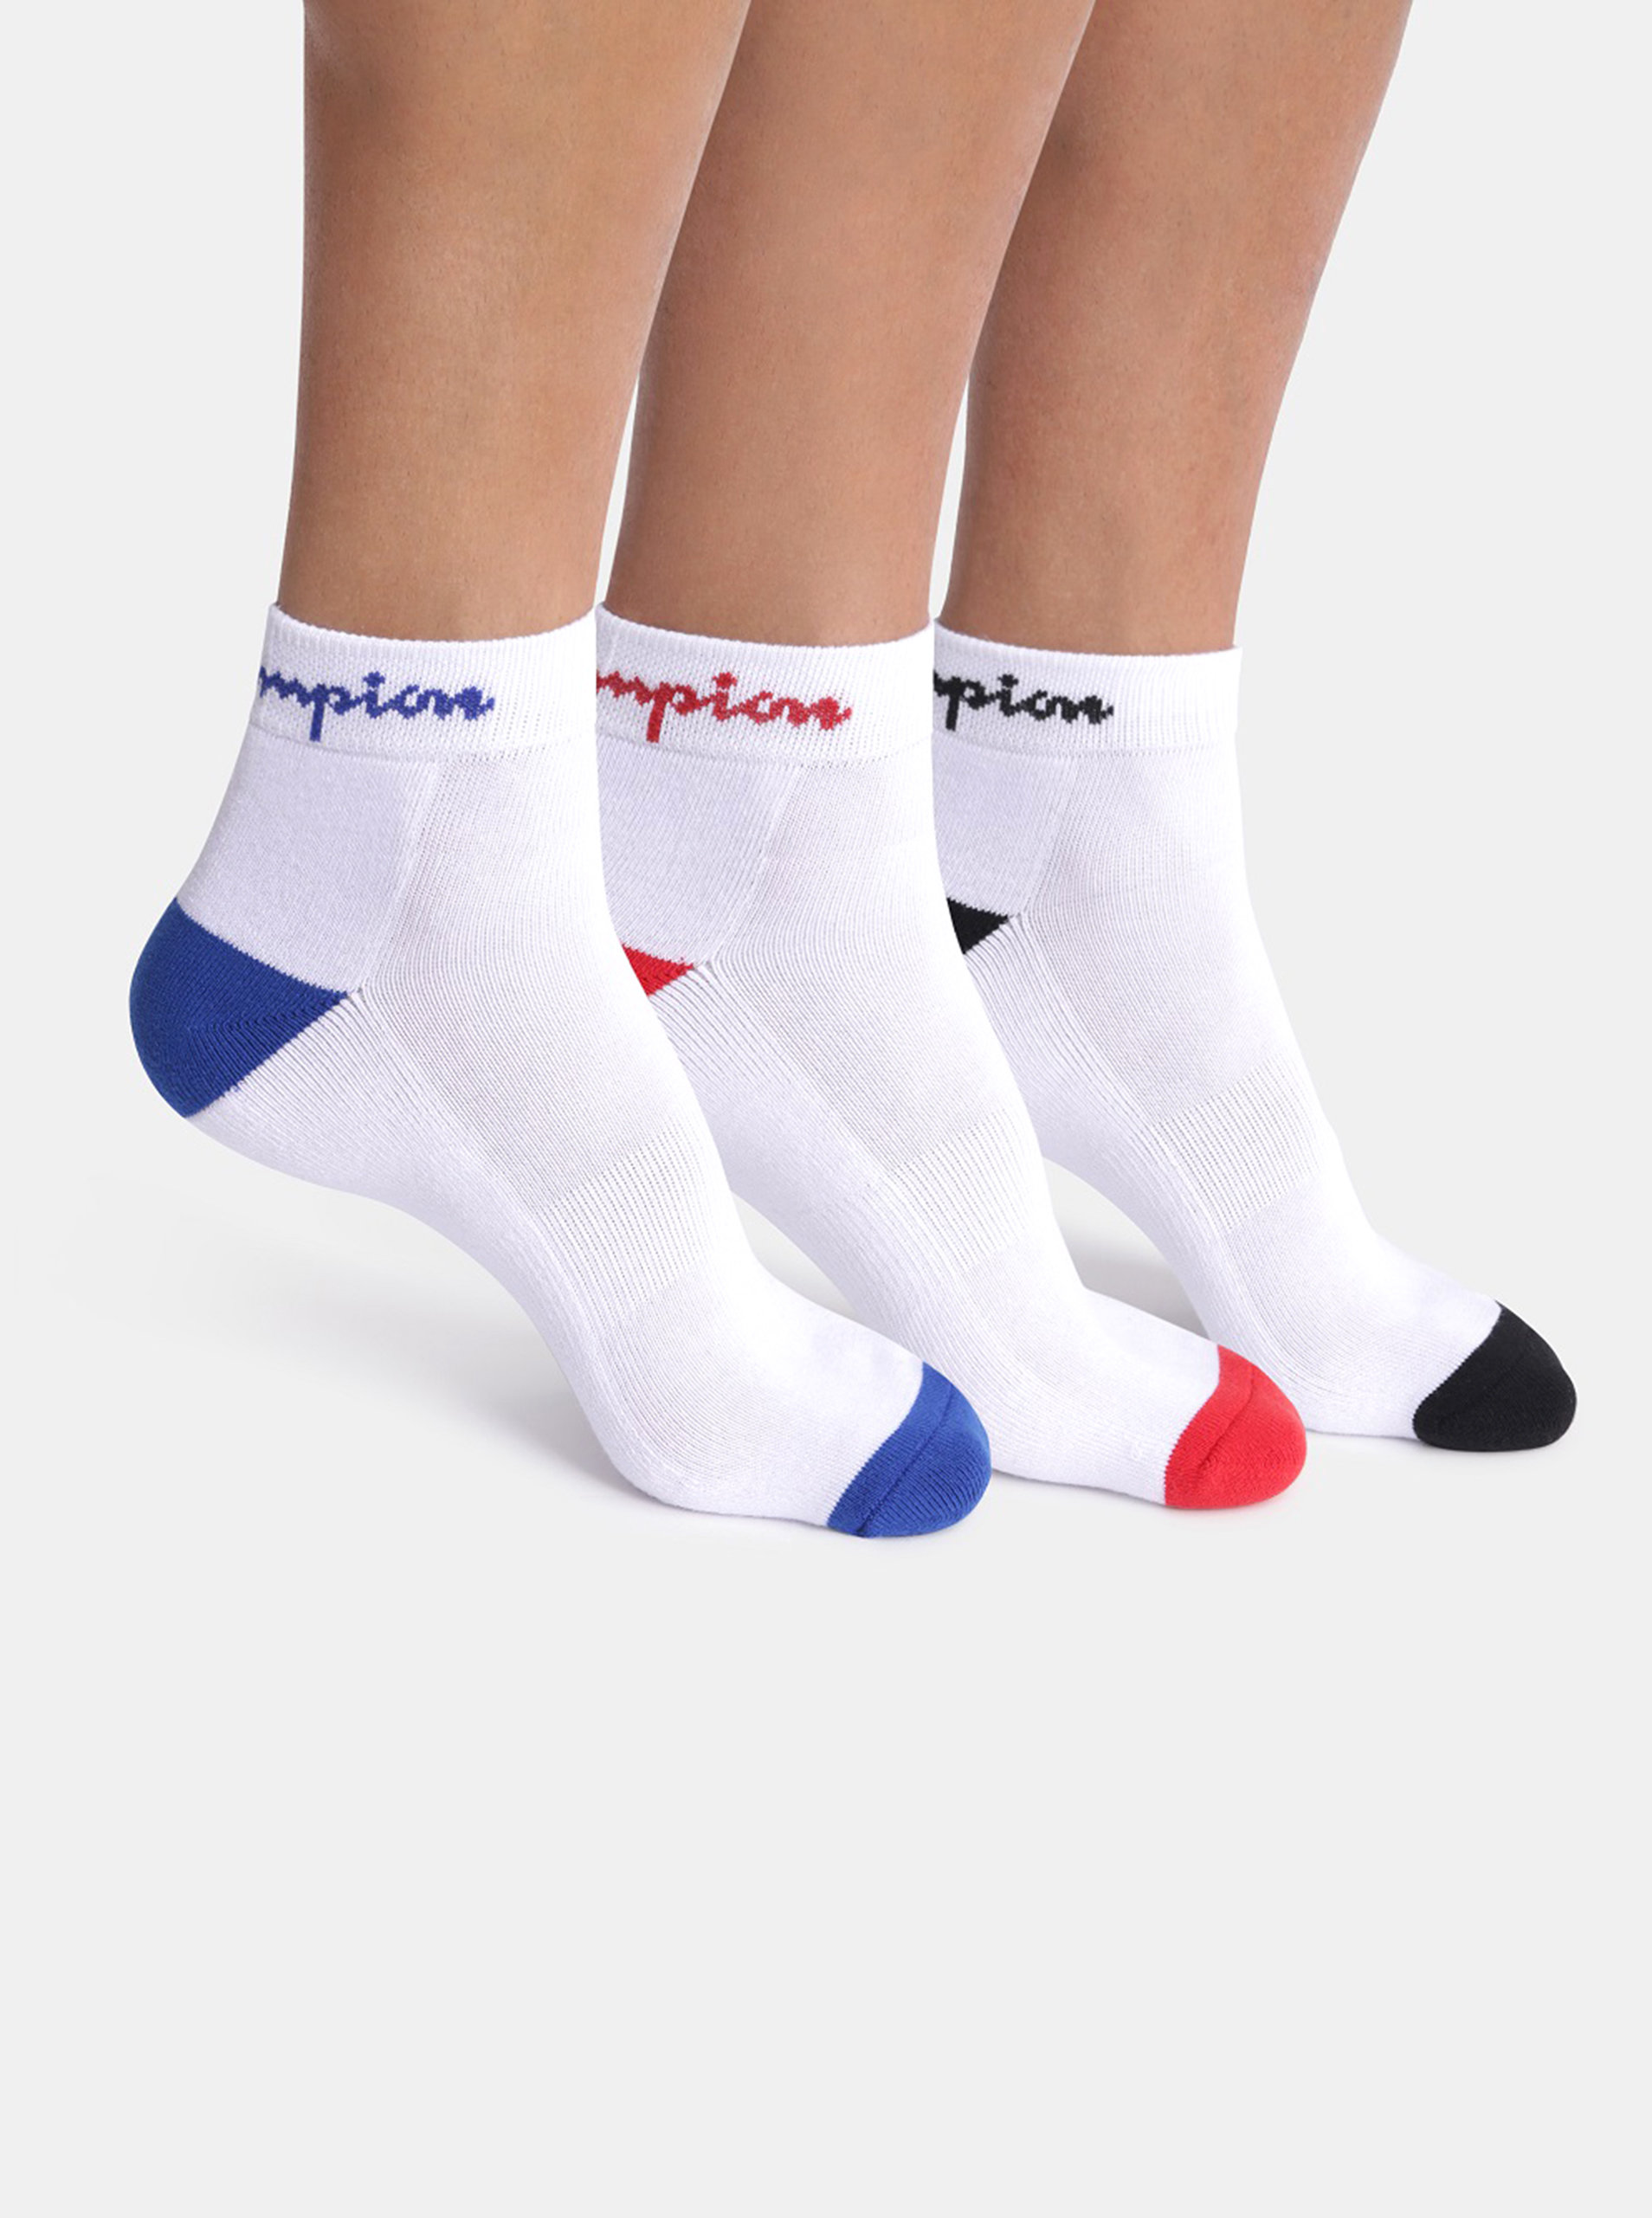 Fotografie CHAMPION CREW ANKLE SOCKS 3 ks - Sportovní kotníkové ponožky s logem Champion 3 páry - bílá - červená - modrá